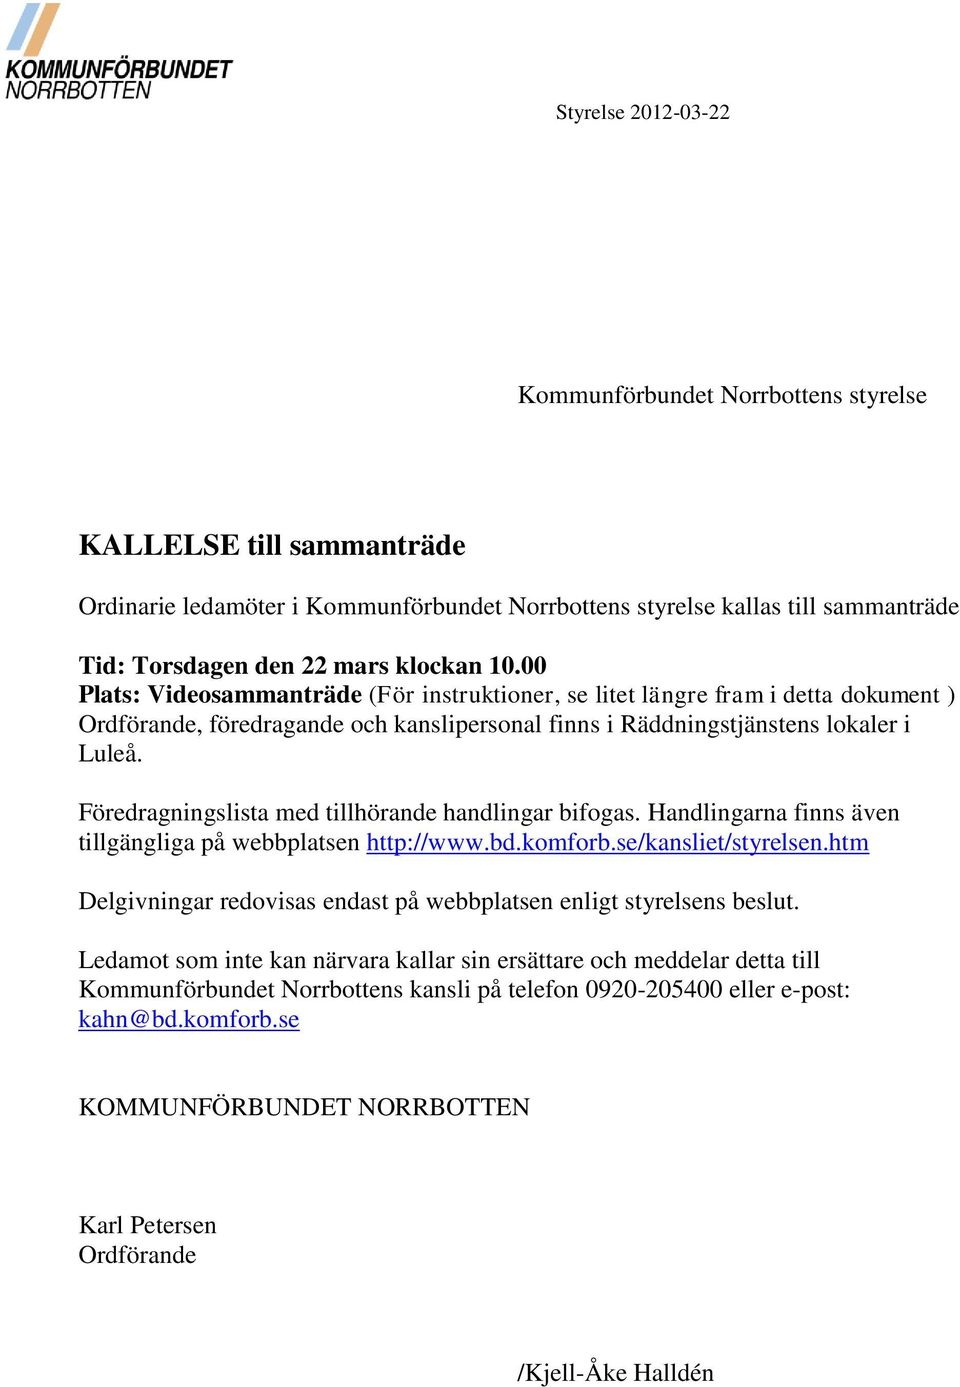 Föredragningslista med tillhörande handlingar bifogas. Handlingarna finns även tillgängliga på webbplatsen http://www.bd.komforb.se/kansliet/styrelsen.